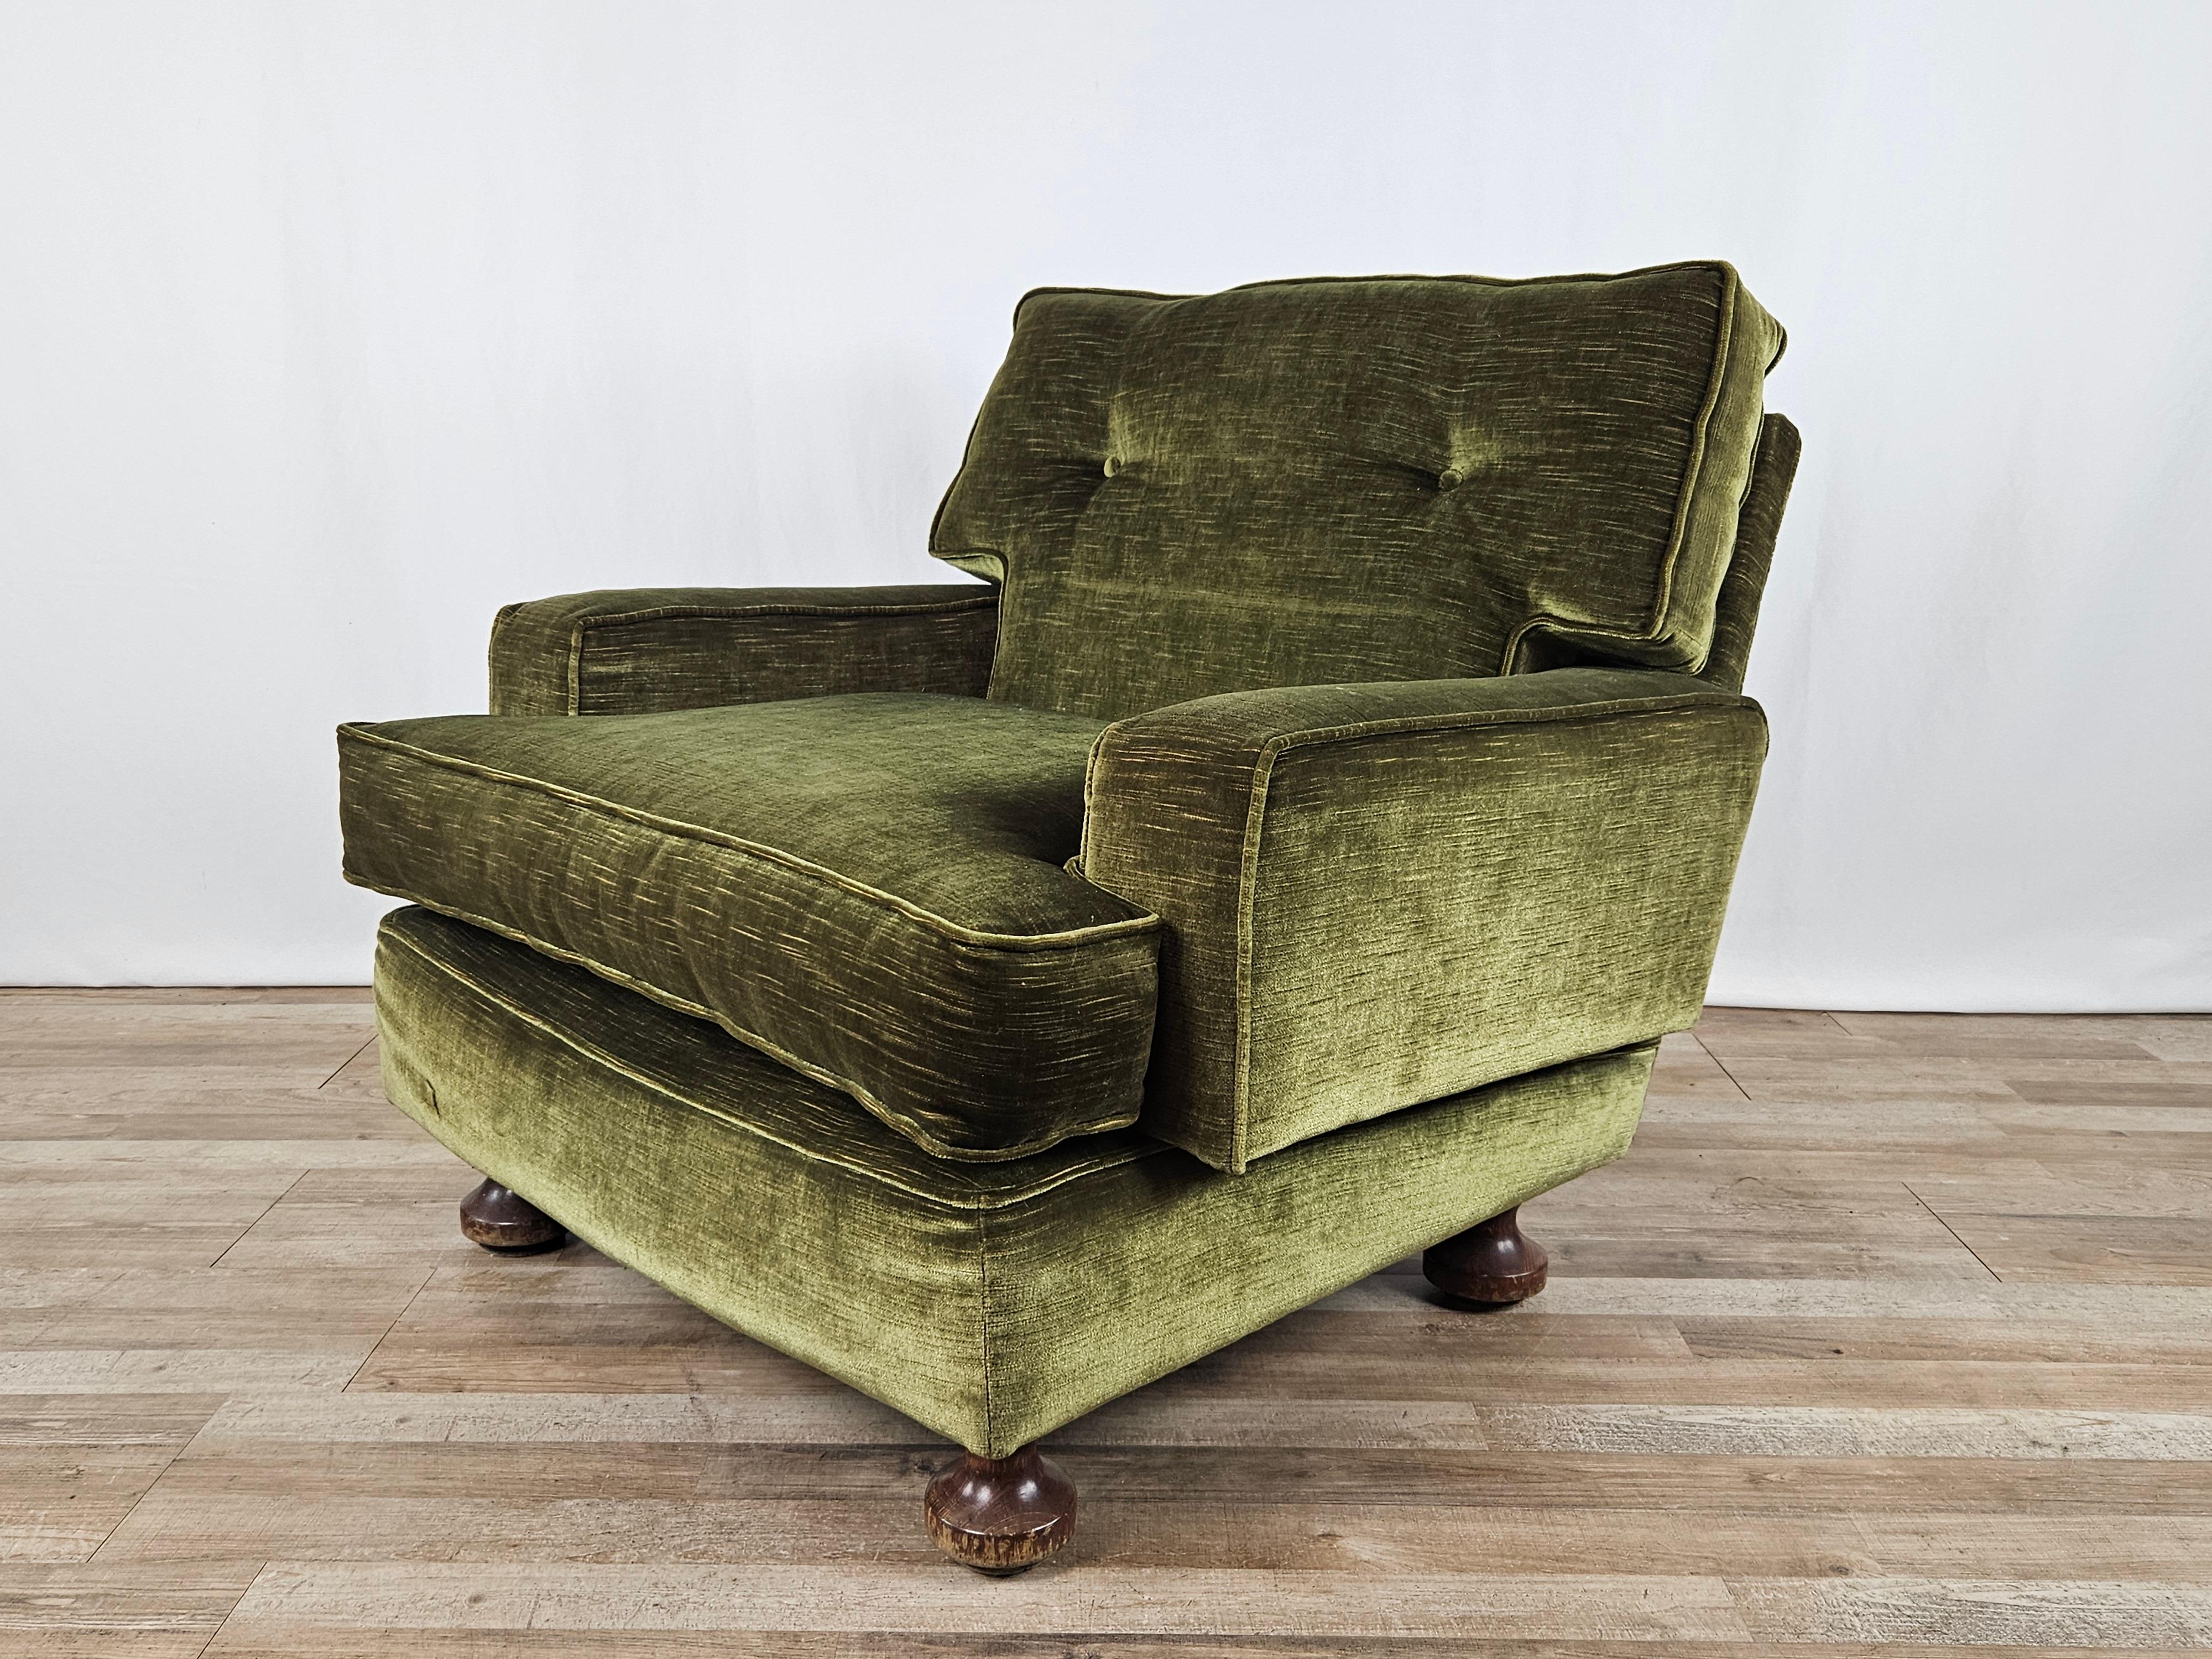 Vintage-Sessel, gepolstert mit waldgrünem Stoff, italienische Produktion 1970er Jahre.

Abnehmbare Sitz- und Rückenkissen sowie sehr bequeme Armlehnen für entspannte Momente im Büro oder zu Hause.

Der Stuhl weist normale alters- und